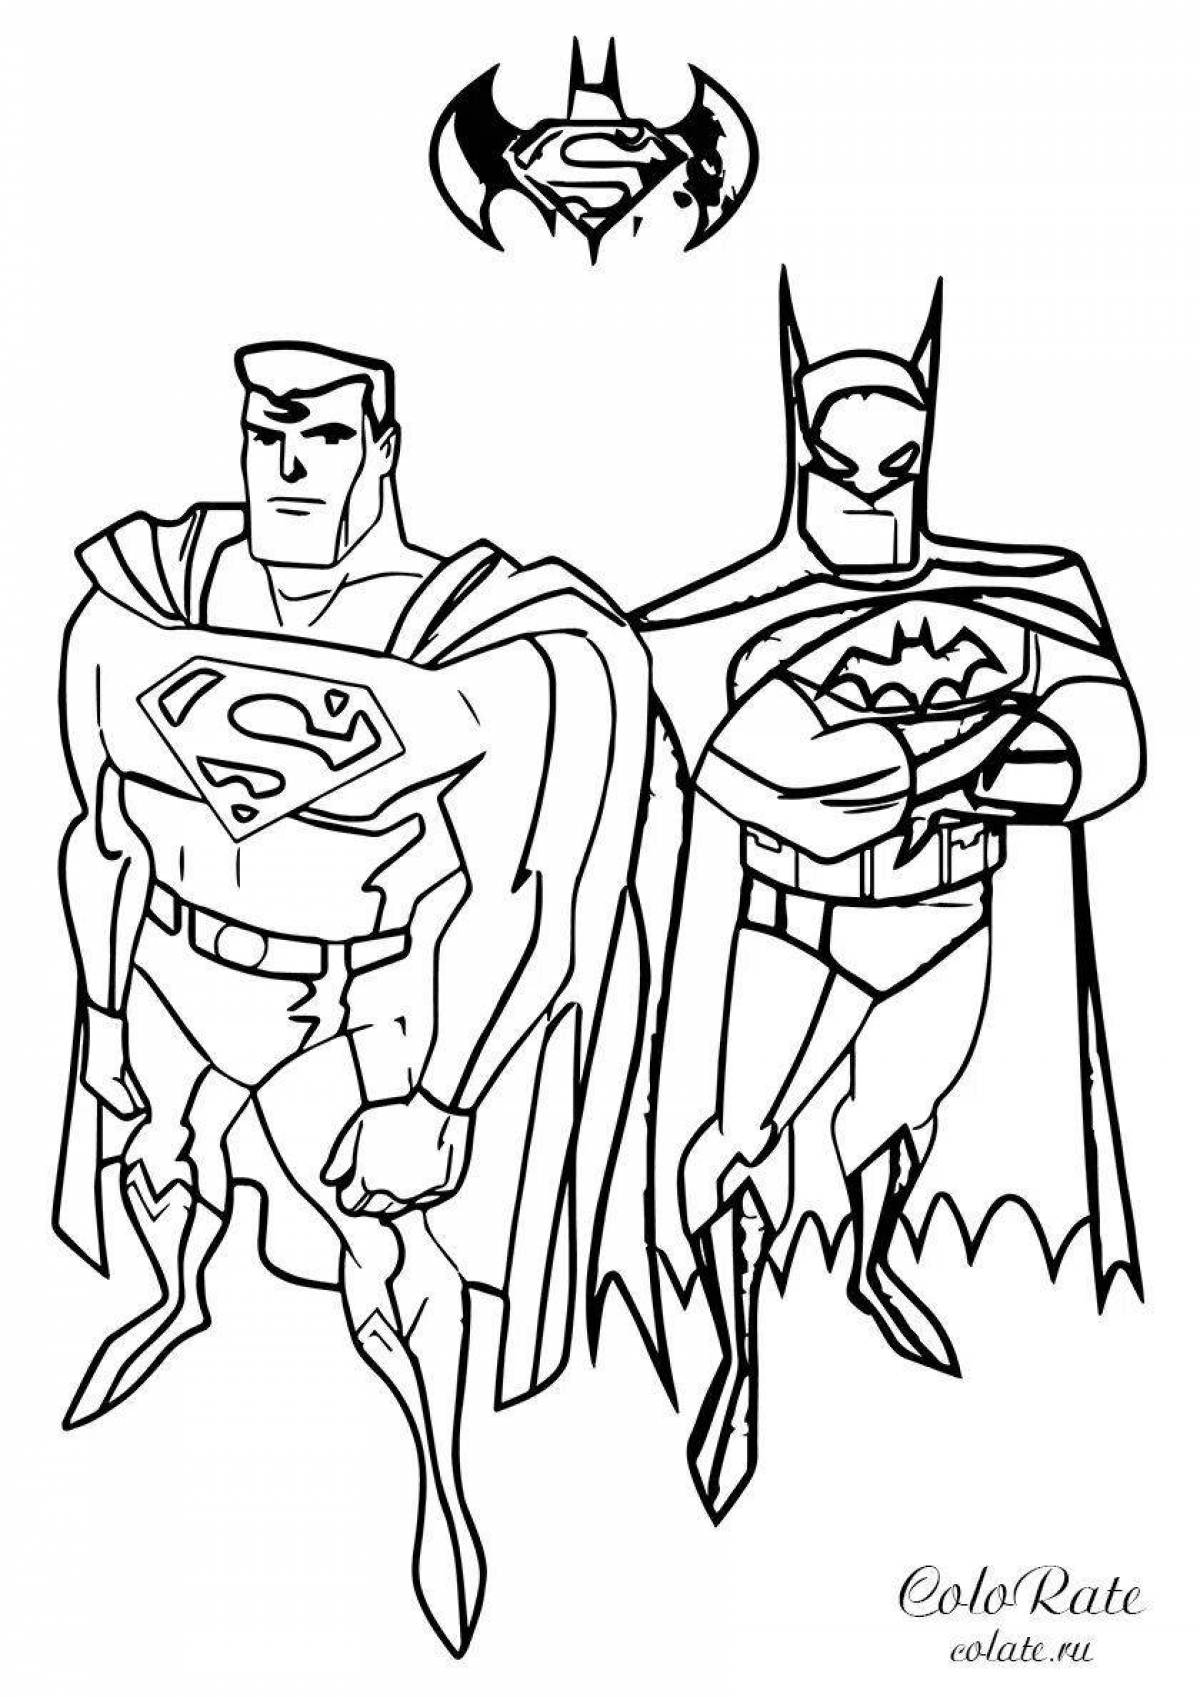 Комическая раскраска супермен для детей 3-4 лет